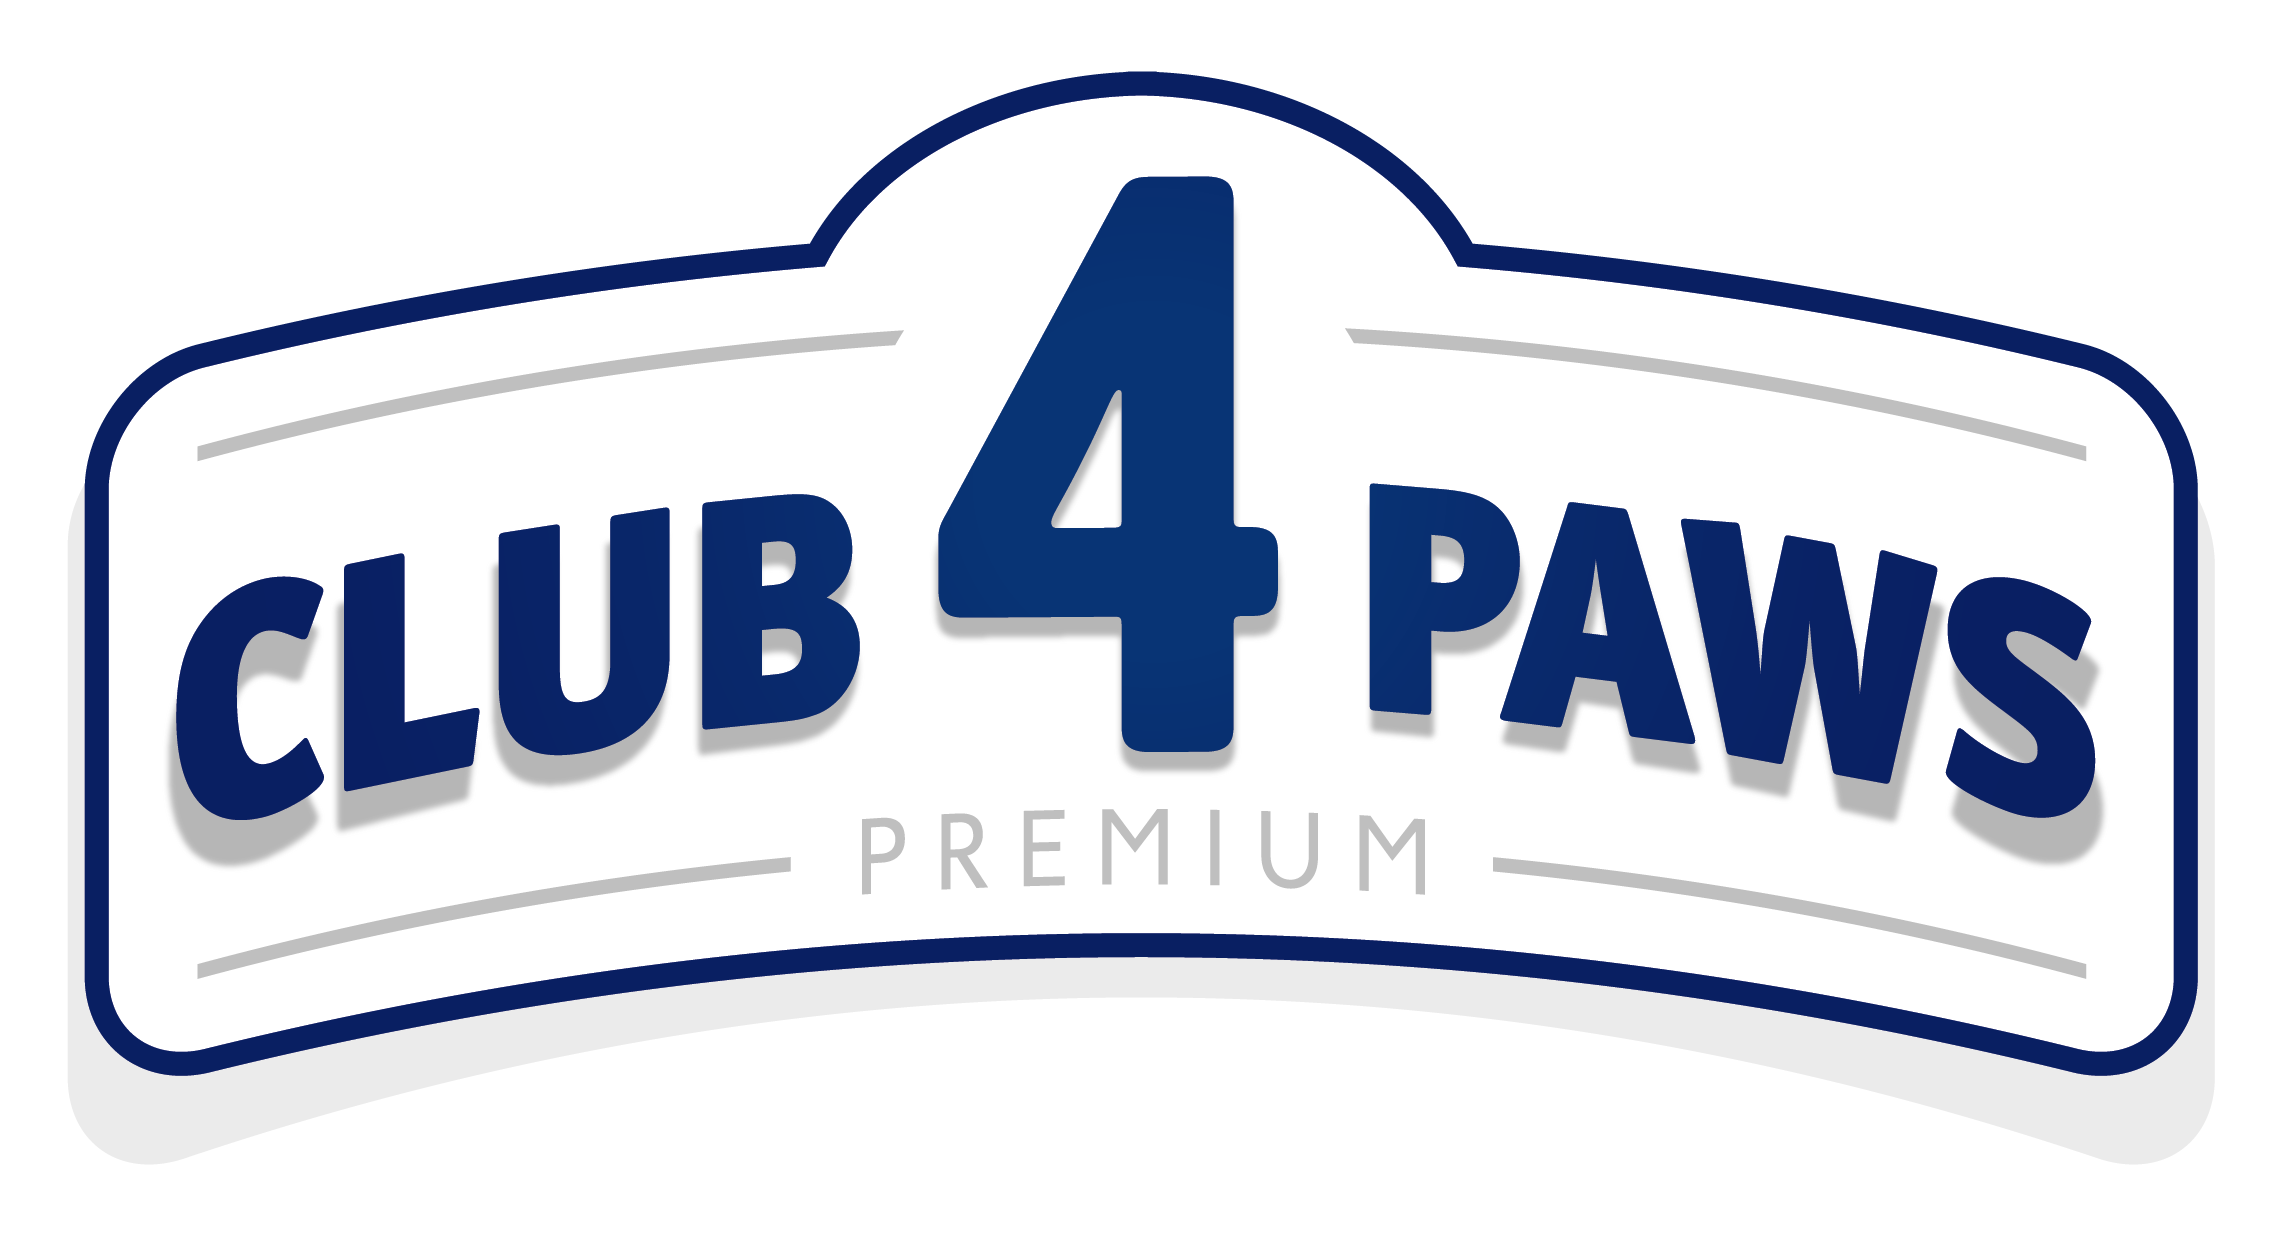 CLUB 4 PAWS Premium